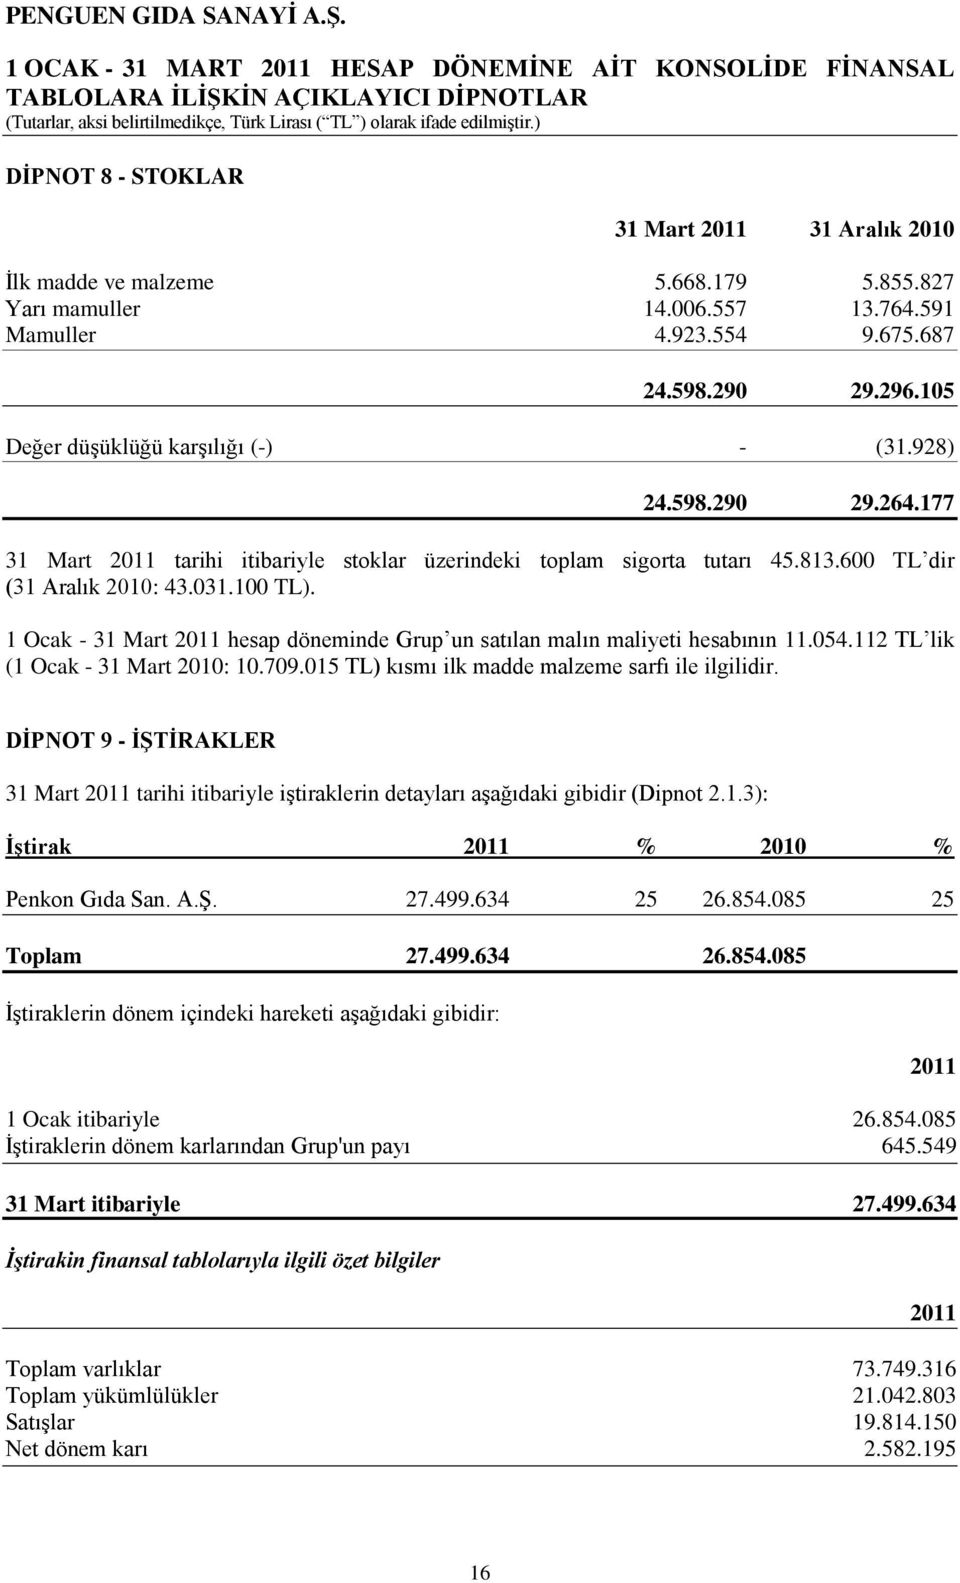 1 Ocak - 31 Mart 2011 hesap döneminde Grup un satılan malın maliyeti hesabının 11.054.112 TL lik (1 Ocak - 31 Mart 2010: 10.709.015 TL) kısmı ilk madde malzeme sarfı ile ilgilidir.